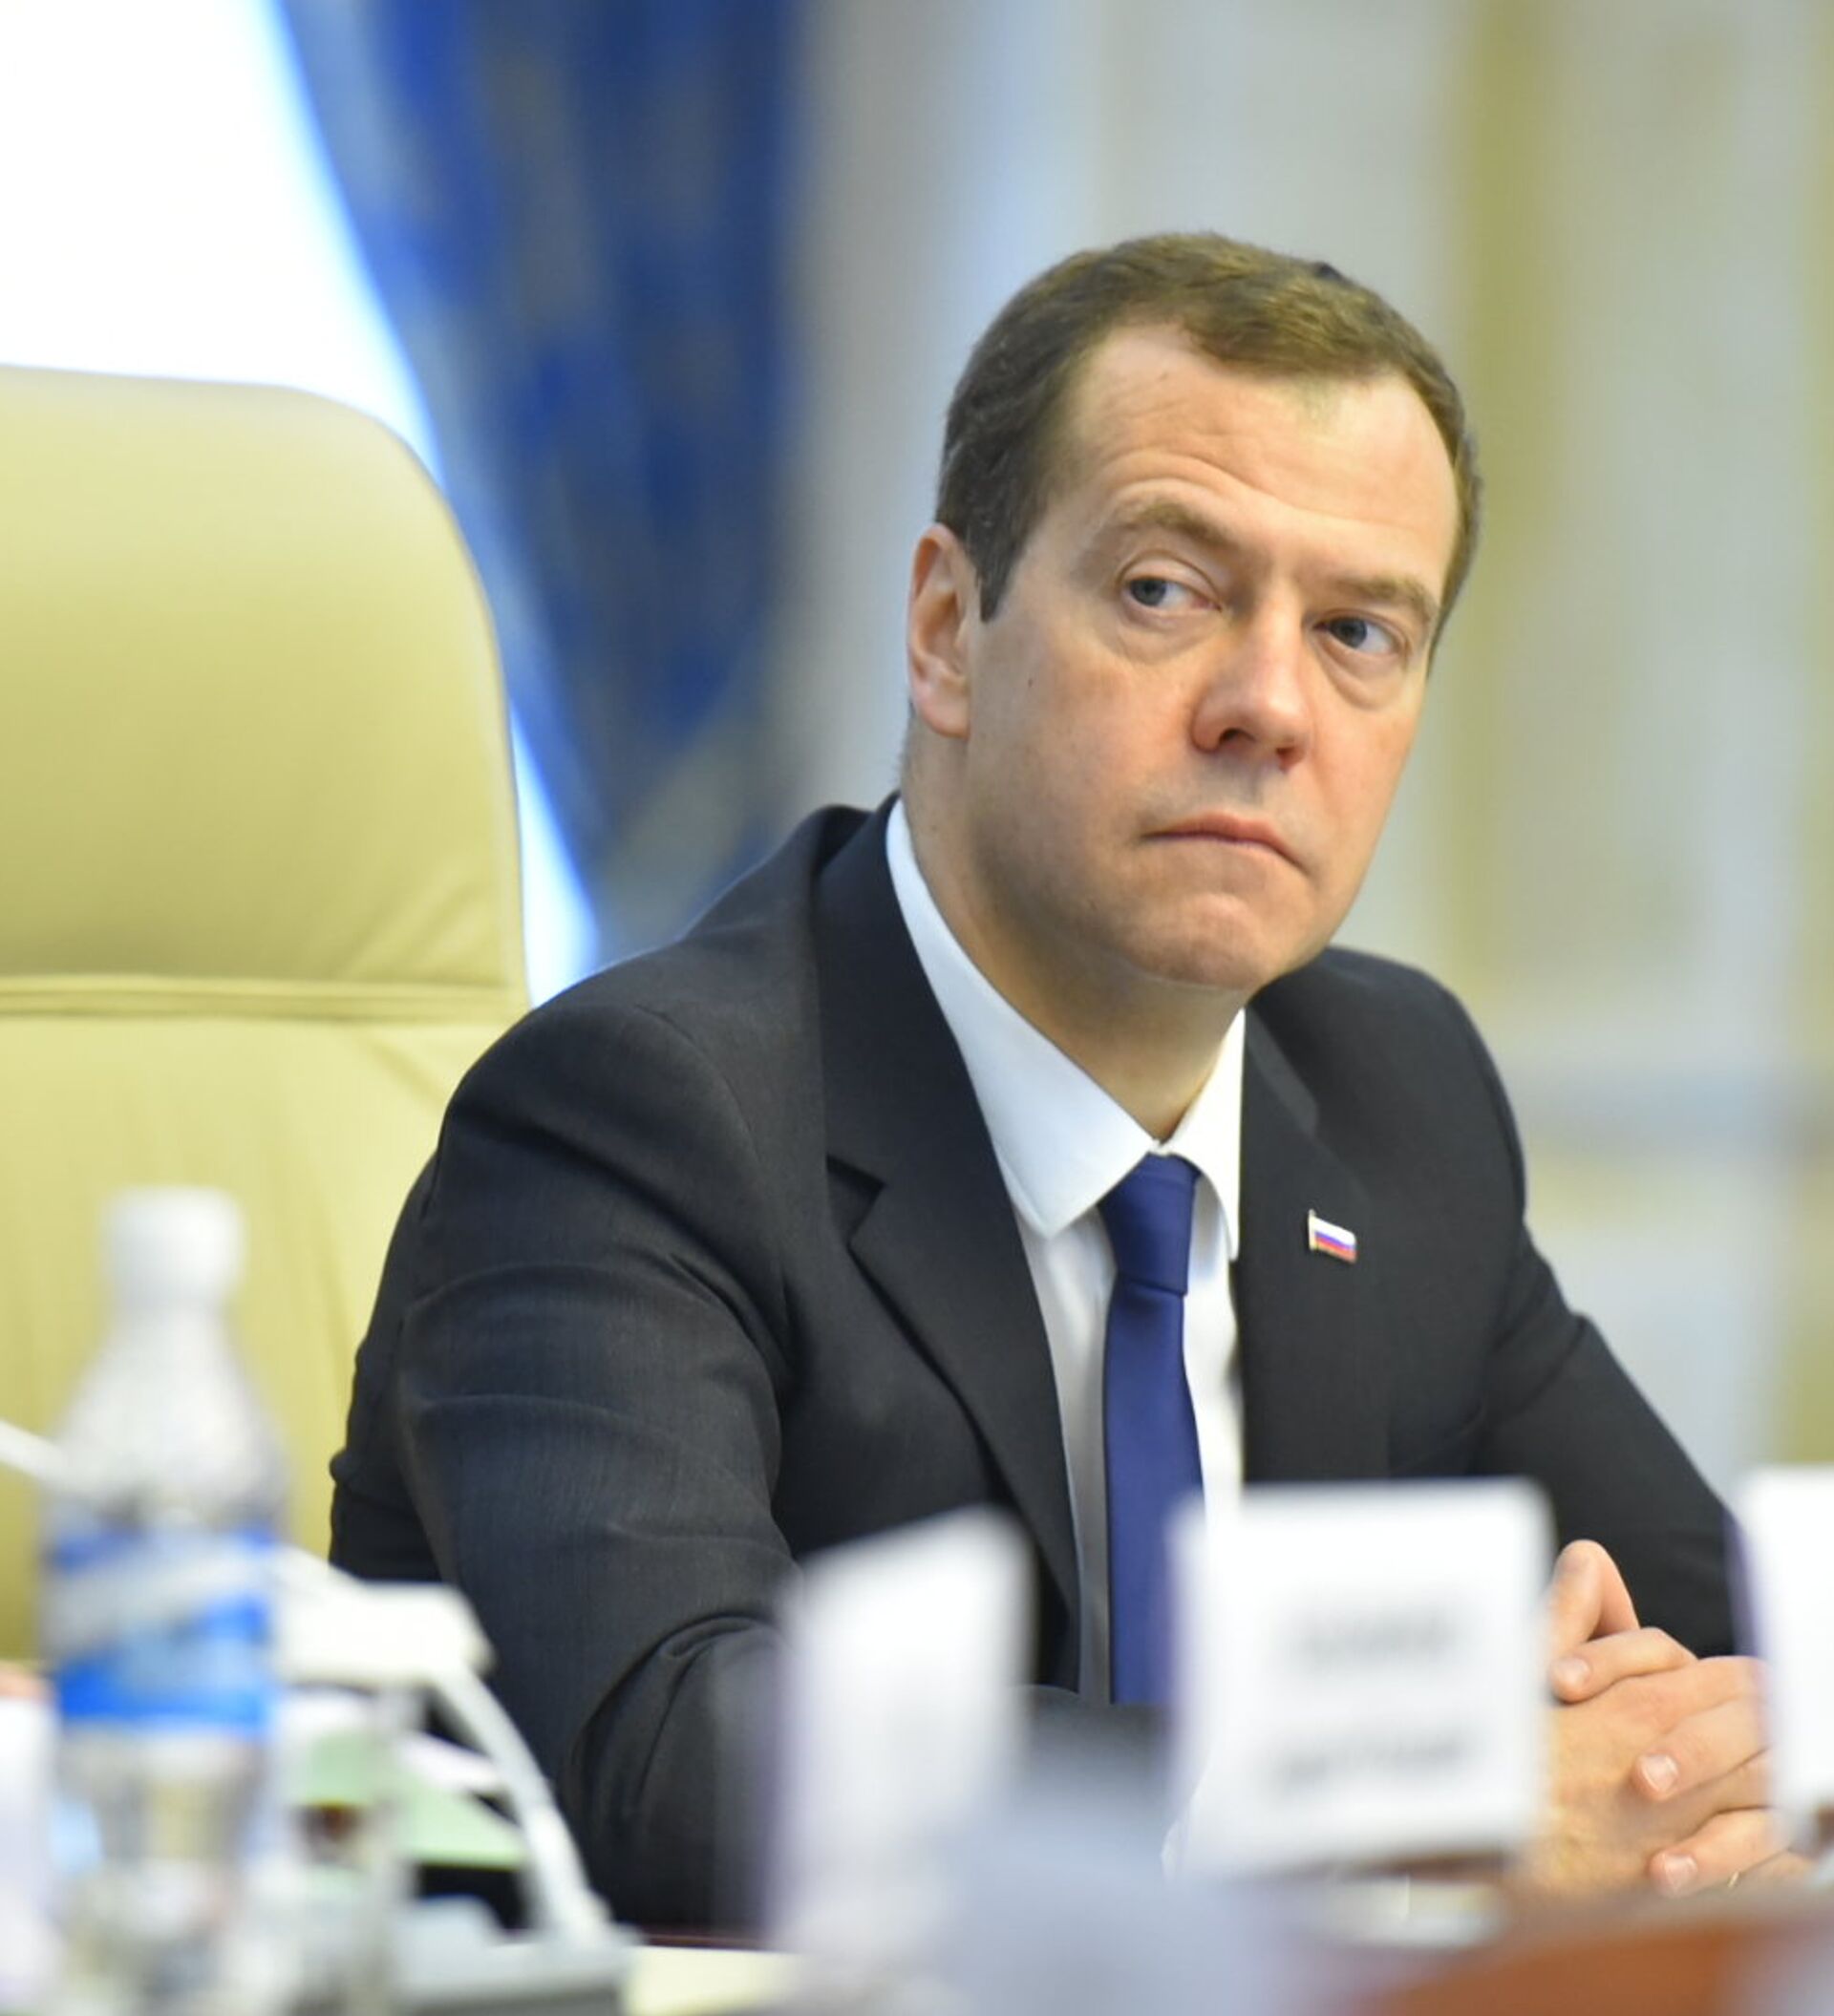 Новый российский премьер. ДИЗО Медведев. Вице-премьер России сейчас Сафоев. Д. Медведев в Оренбурге в национальной деревне.